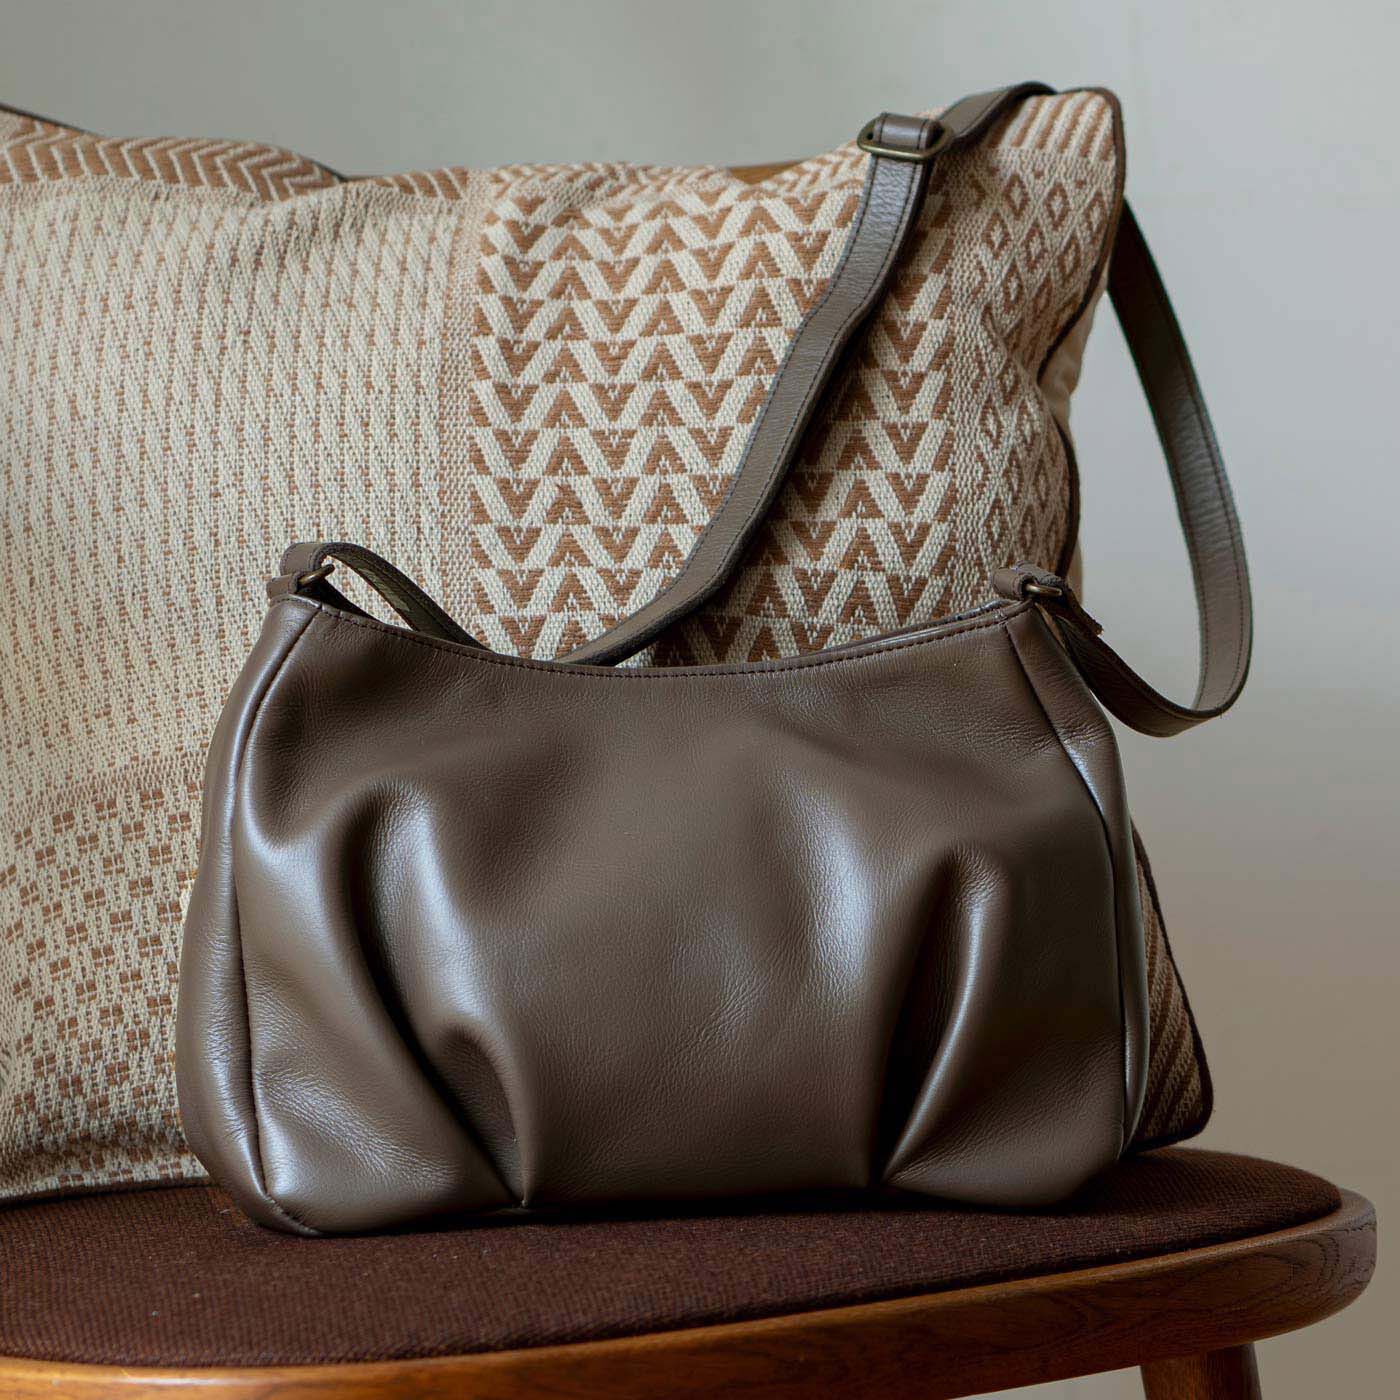 ＆Stories|鞄職人とお母さんが作った 職人本革のパルトゥネールバッグ〈文人茶色〉|プランナーDAIKIが母の願いを形にした、理想の革鞄。母への細かいヒアリングから出た希望に、鞄デザイナーの小林さんが完璧に応えてくれました。